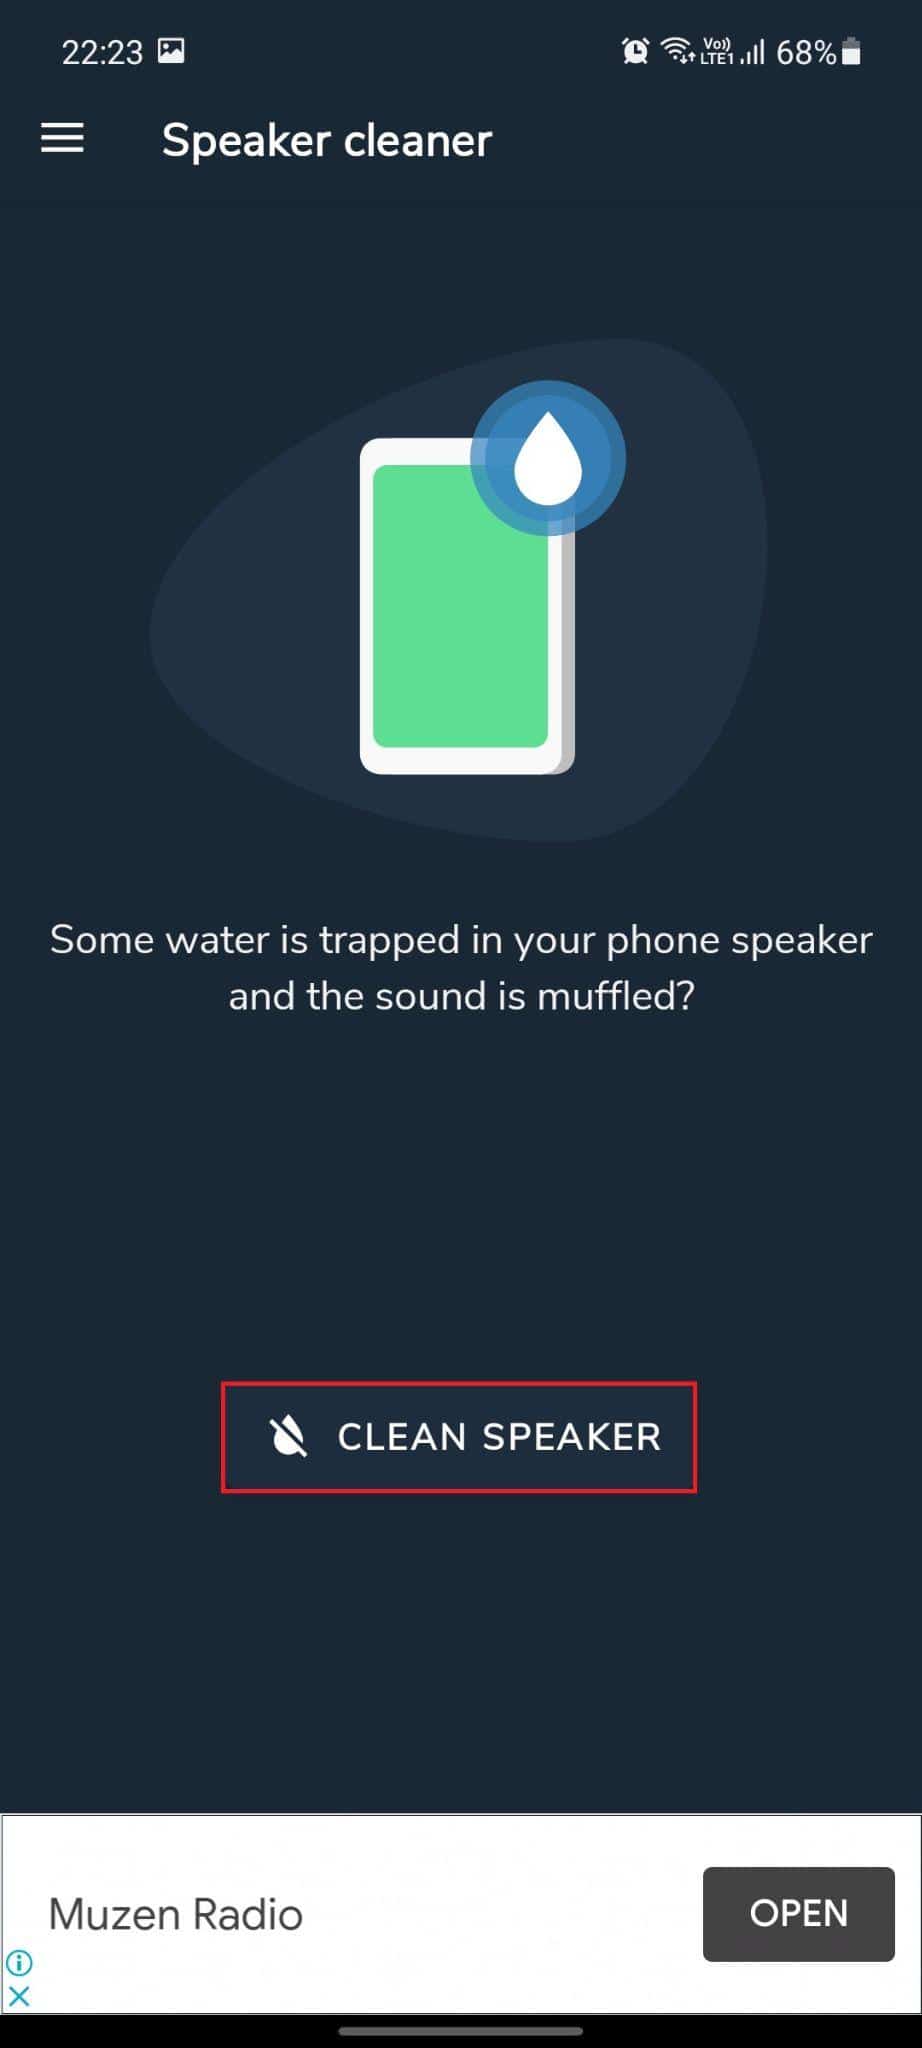 Limpiador de altavoces: elimina el agua y repara la aplicación de sonido. La opción Limpiar altavoz está resaltada. Cómo reparar daños por agua en el altavoz del teléfono